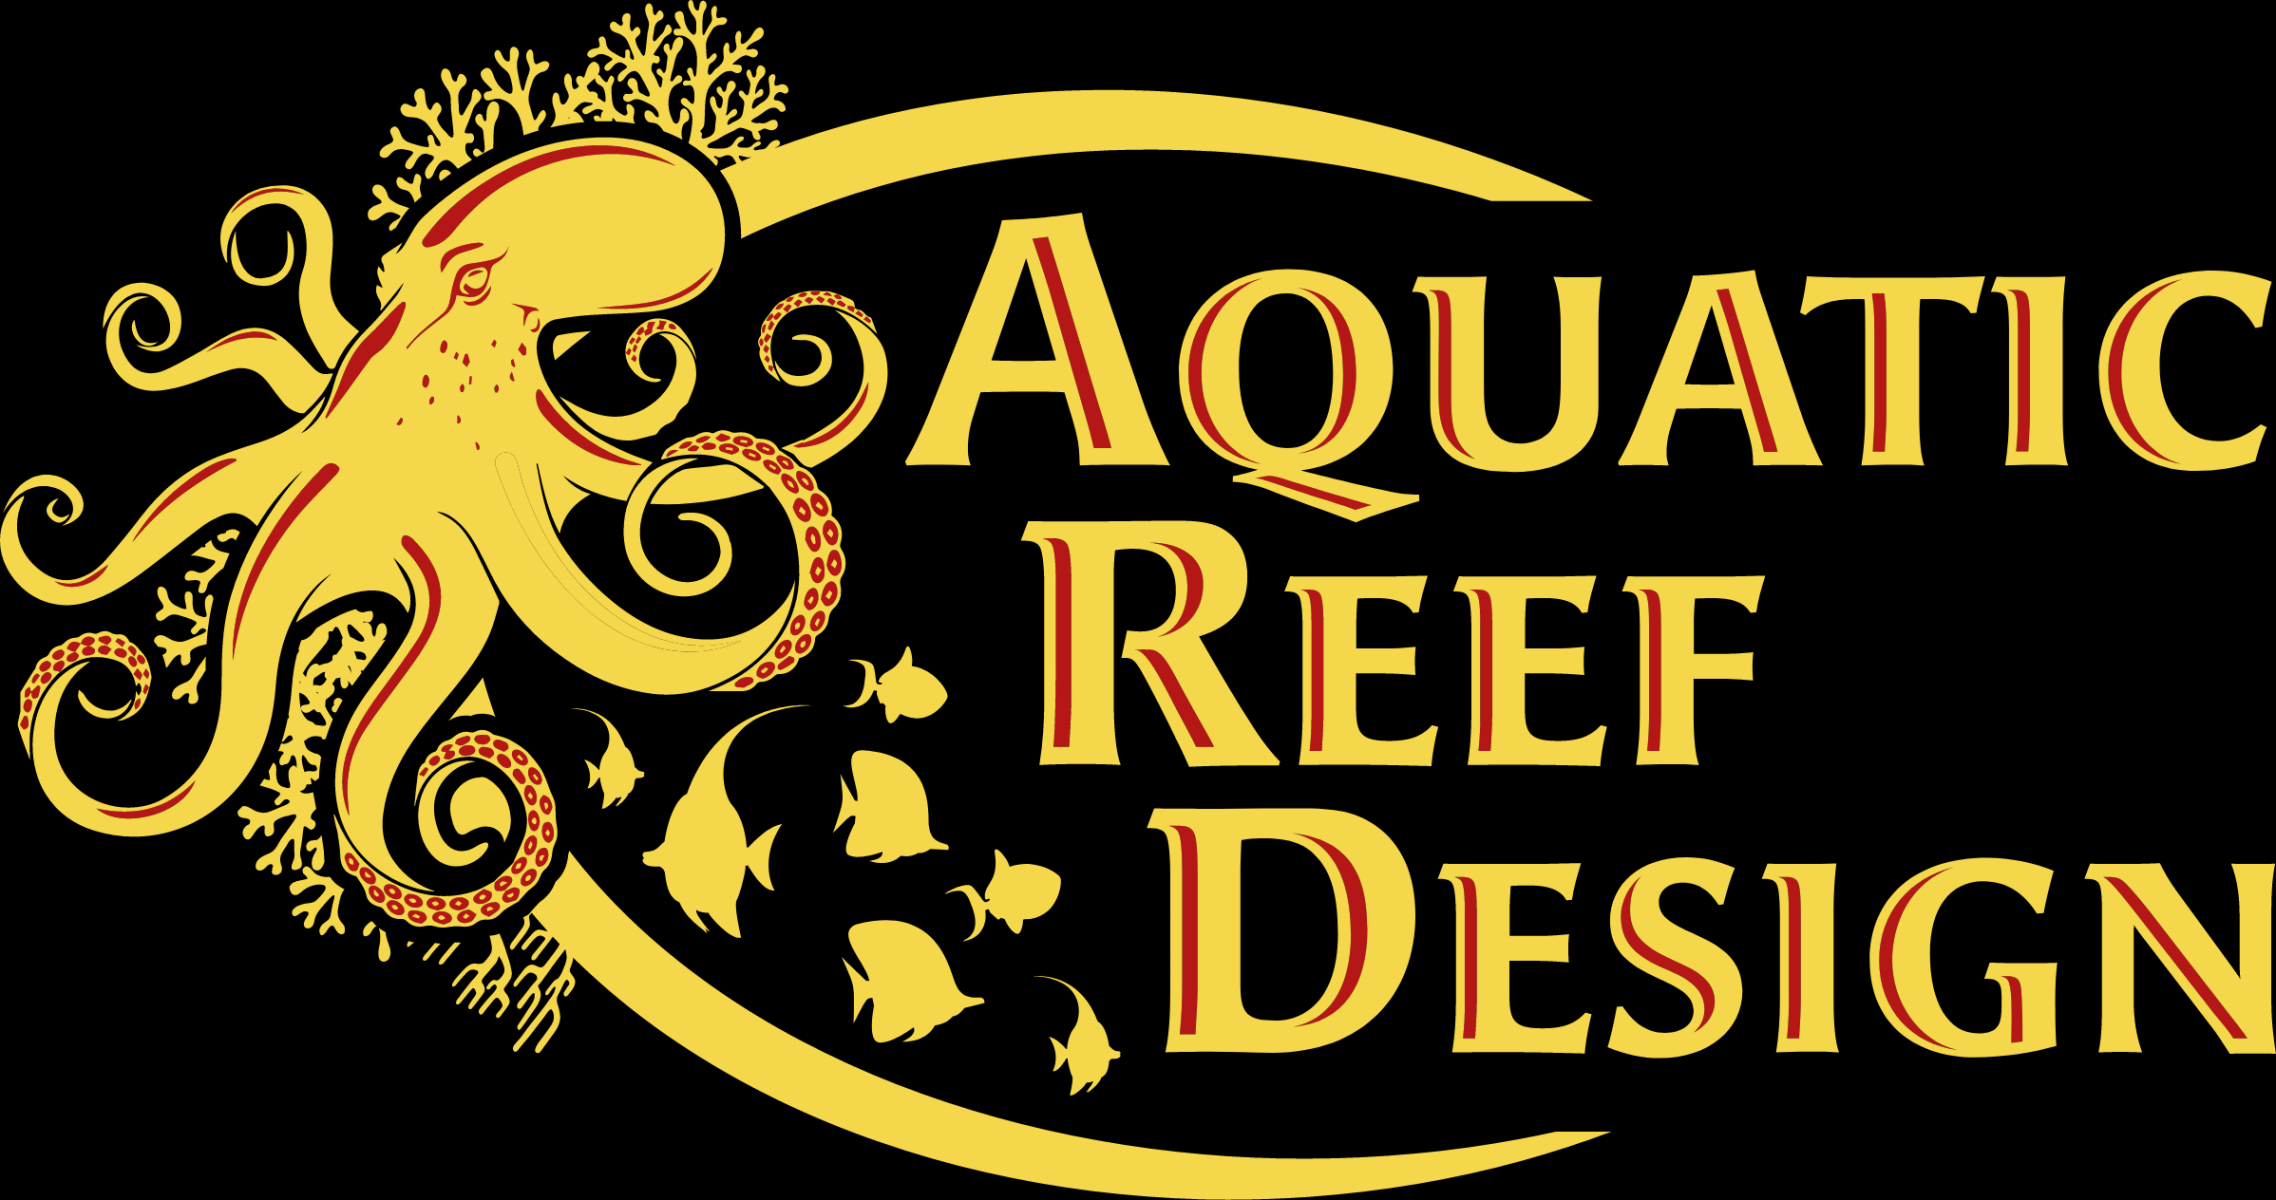 aquatic reef design Bulan 1 Aquatic Reef Design Ocala  Tanks & Service  Aquariums, Fish